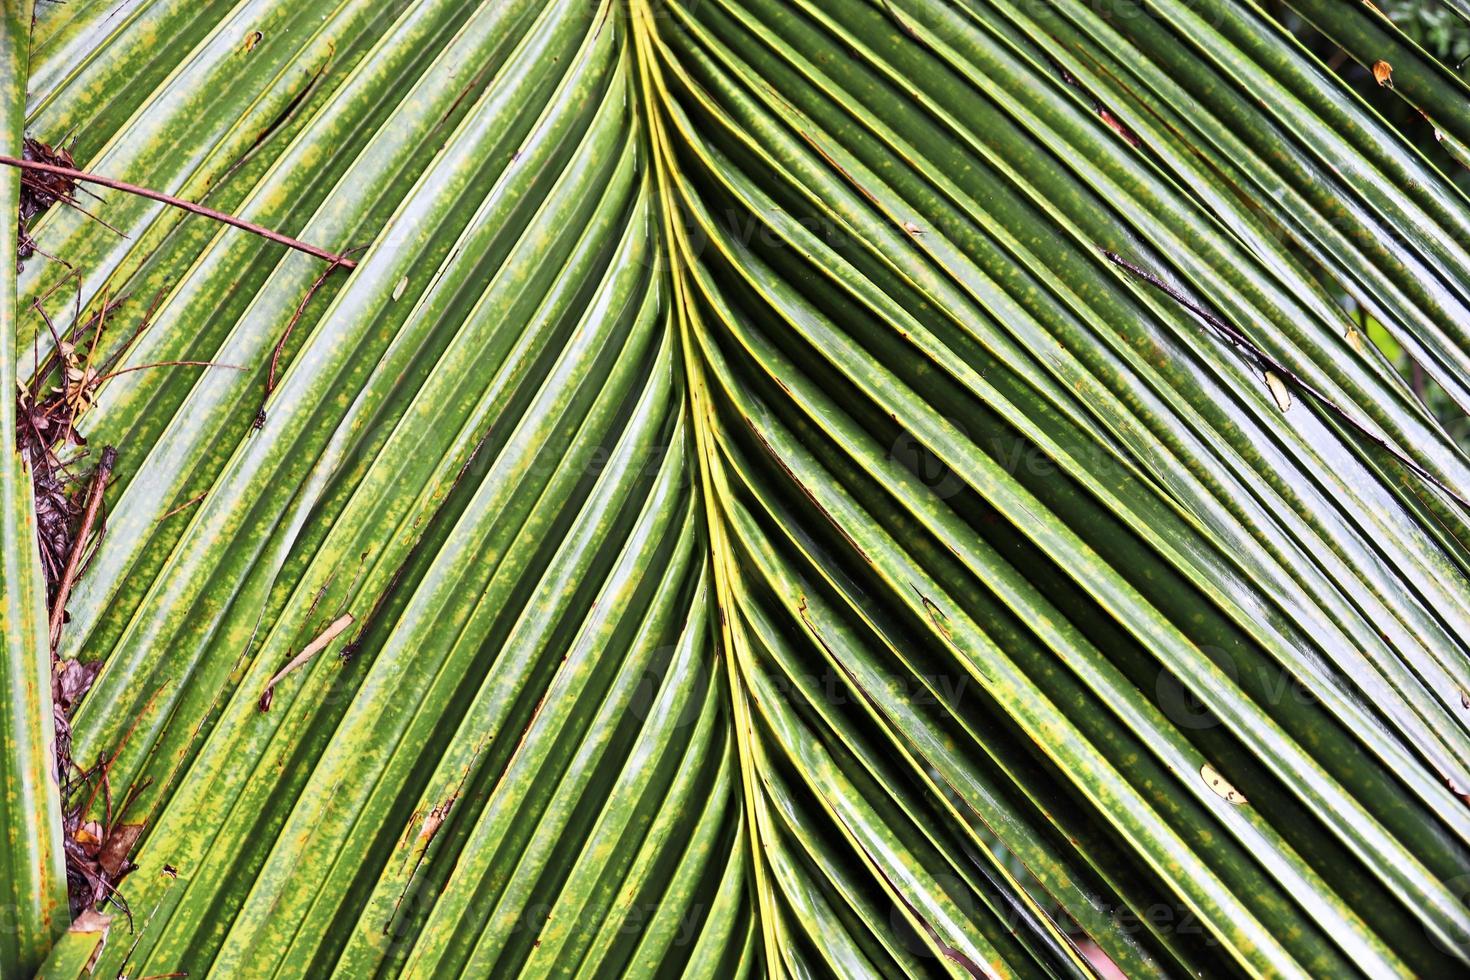 bellissime palme sulla spiaggia del paradiso tropicale isole seychelles. foto